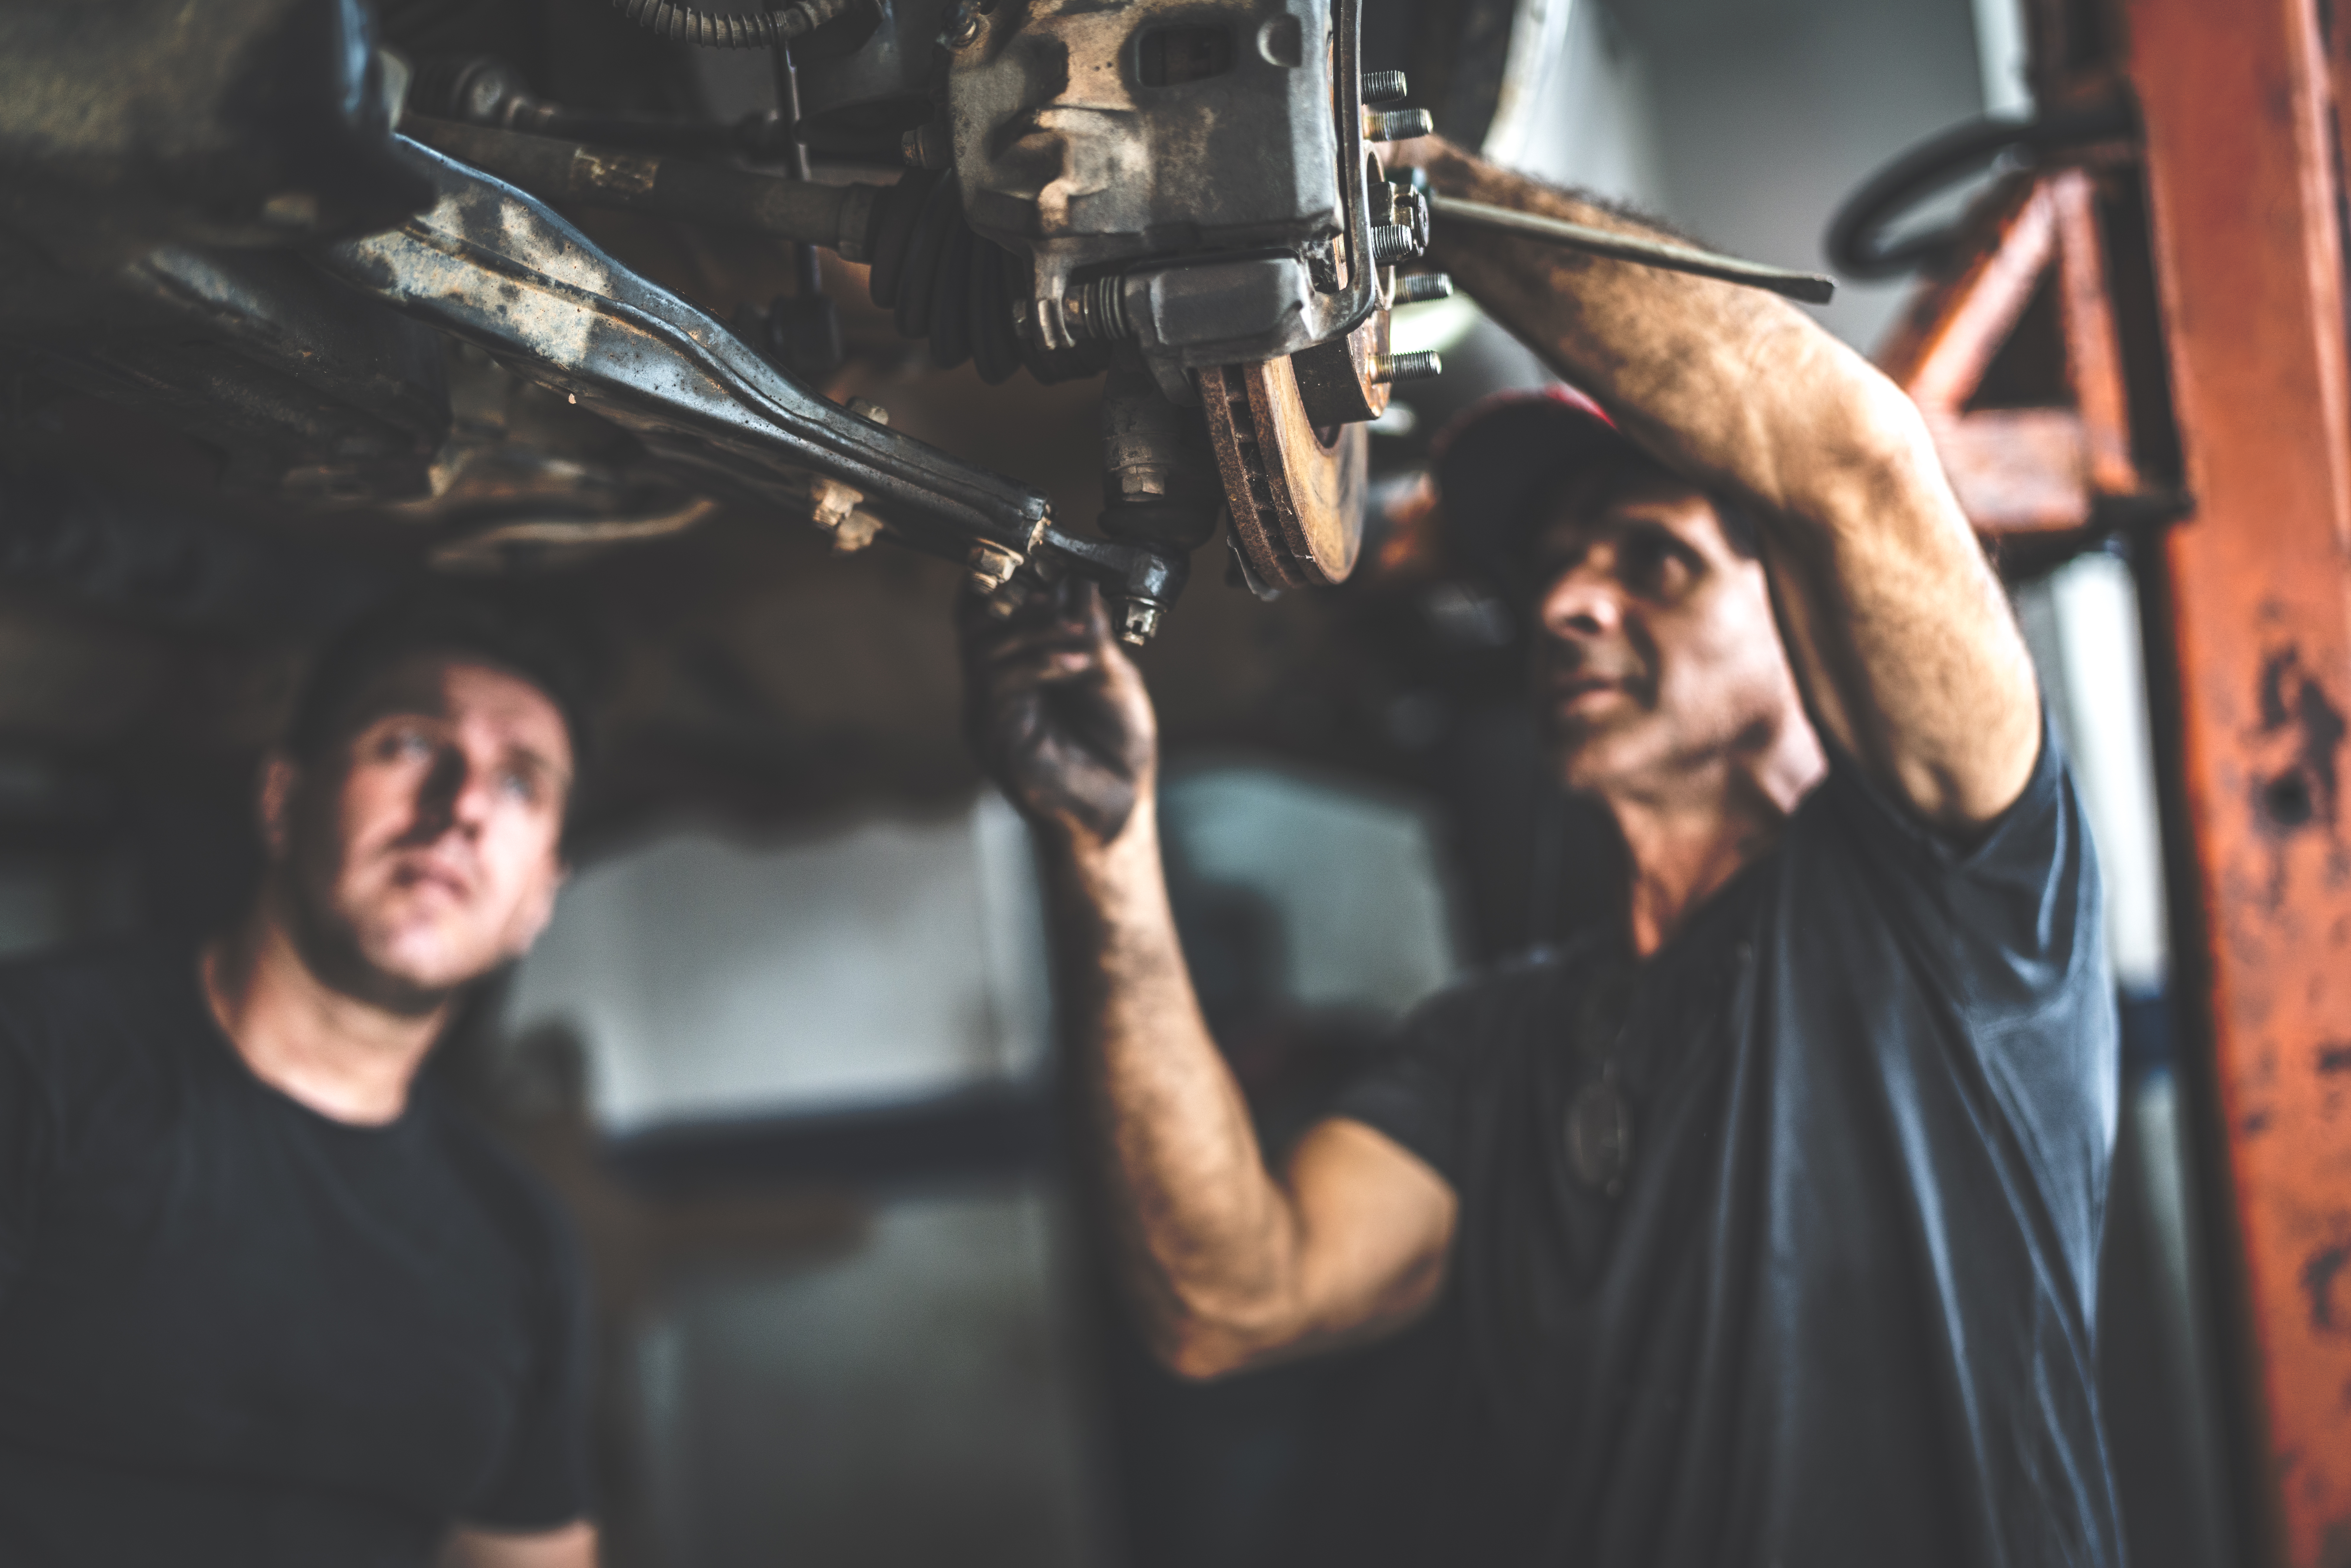 Mécanicien professionnel réparant une voiture dans un atelier de réparation automobile | Source : Getty Images